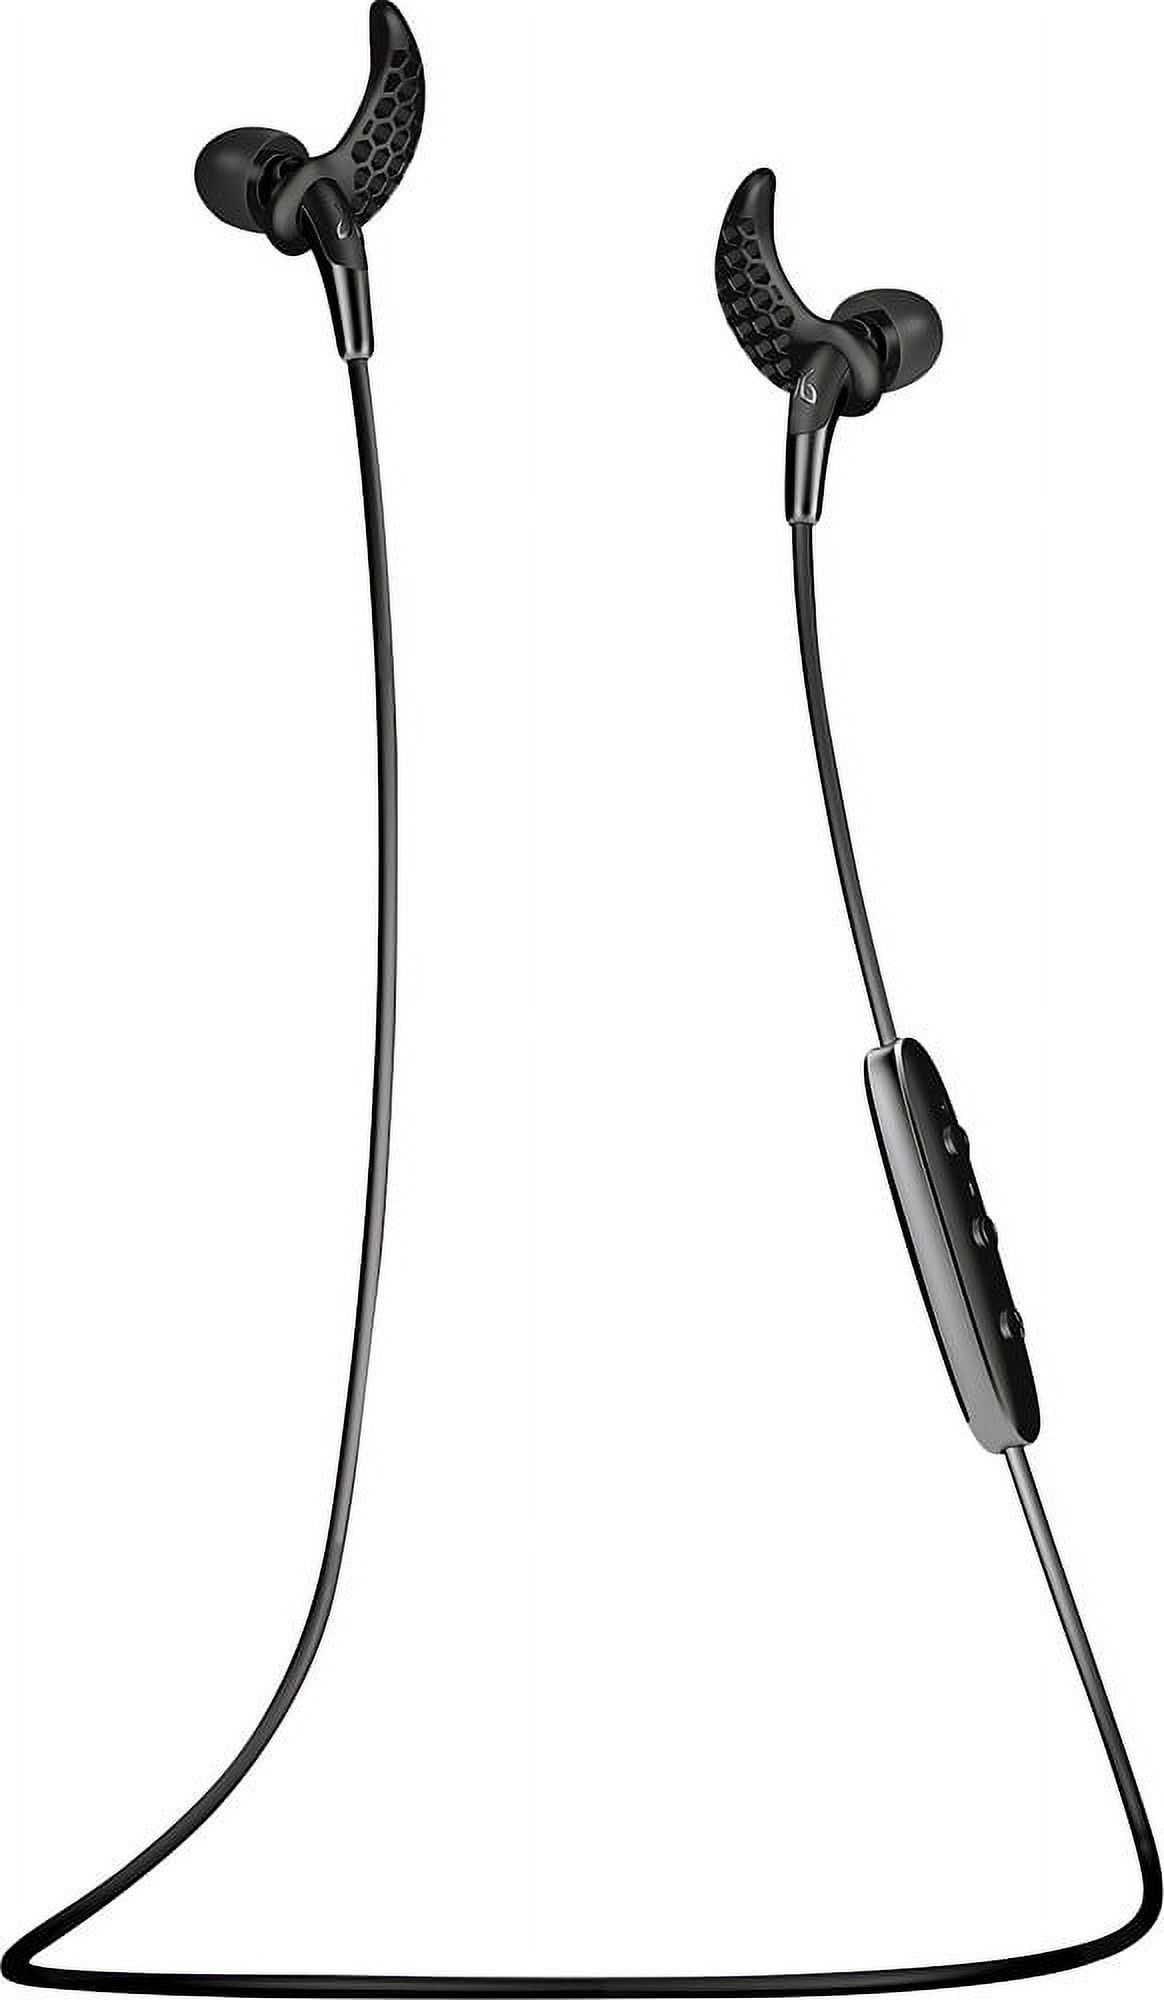 Jaybird - Freedom F5 In-Ear Wireless Headphones